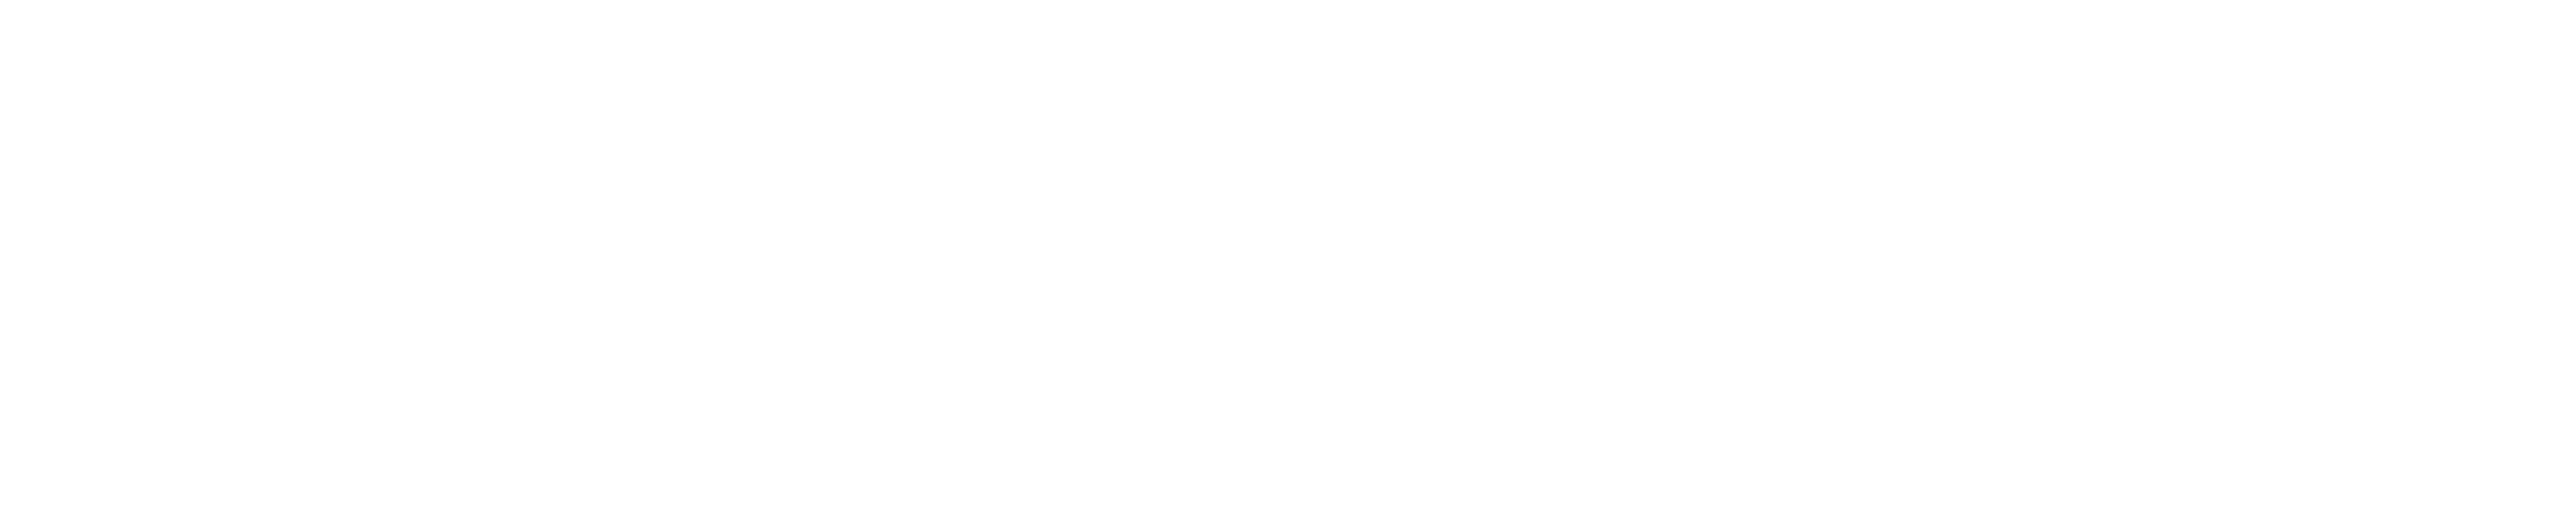 FlyFA